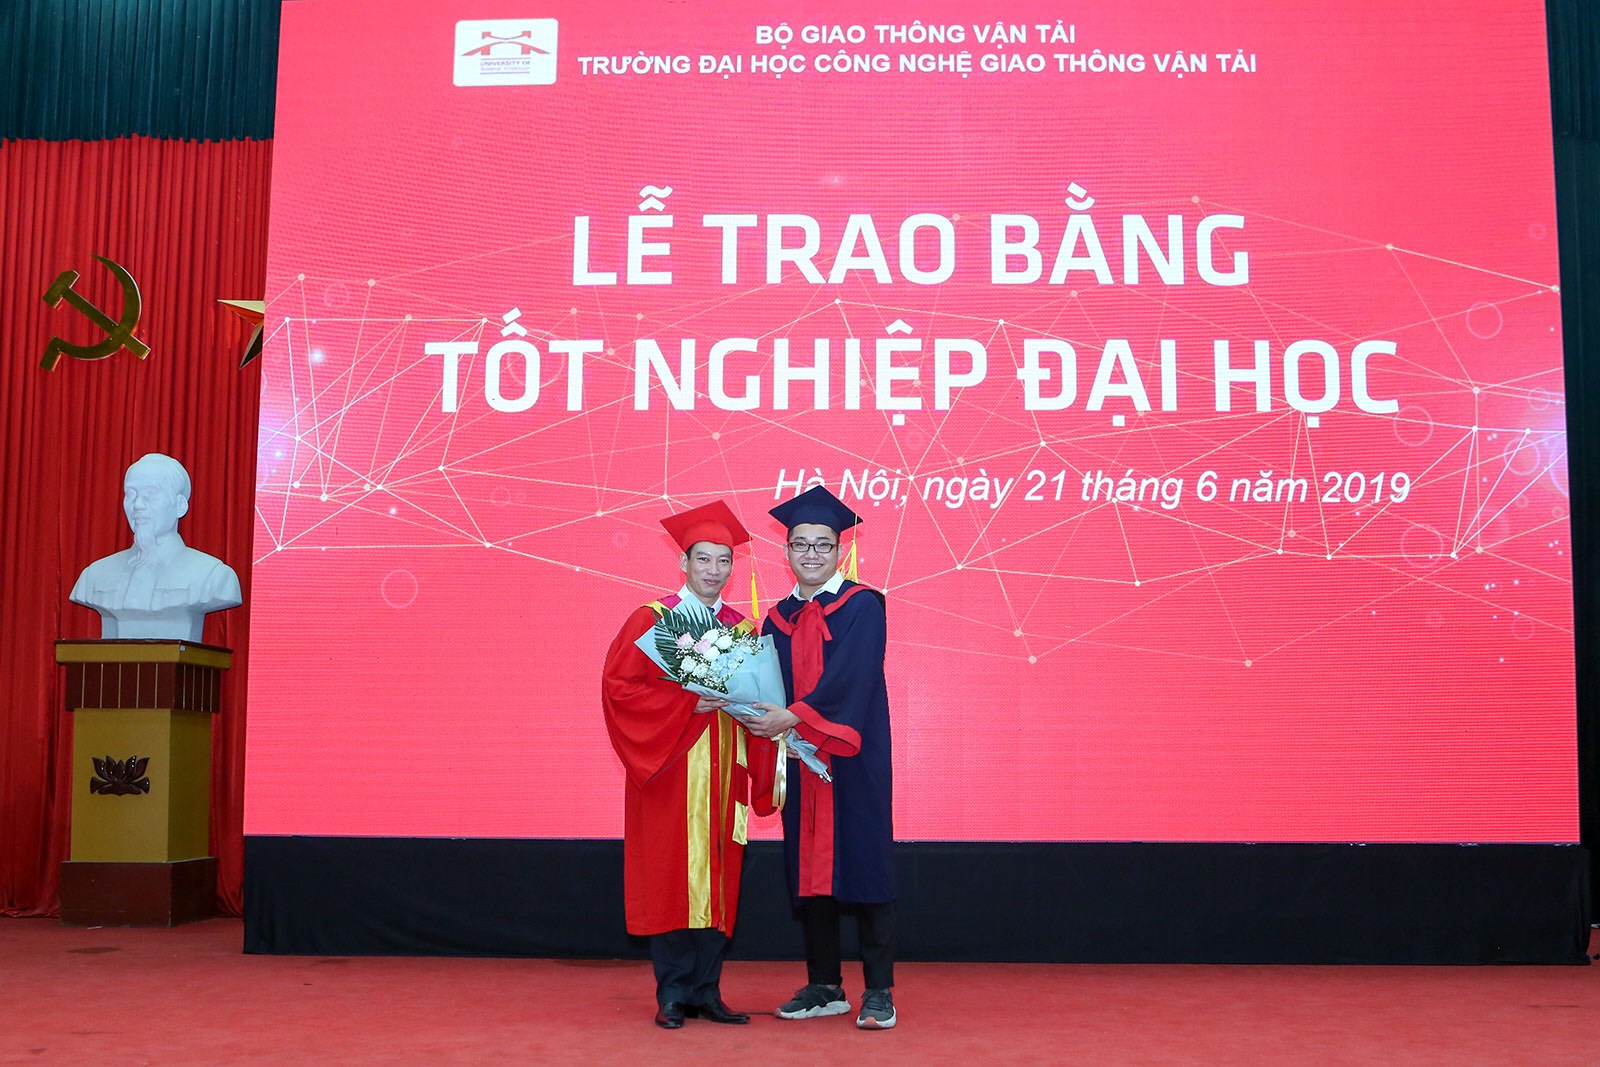 Những cảm xúc của Tân thủ khoa tốt nghiệp toàn khóa năm 2019 - Lê Ngọc Hùng, sinh viên lớp 65DCCD21